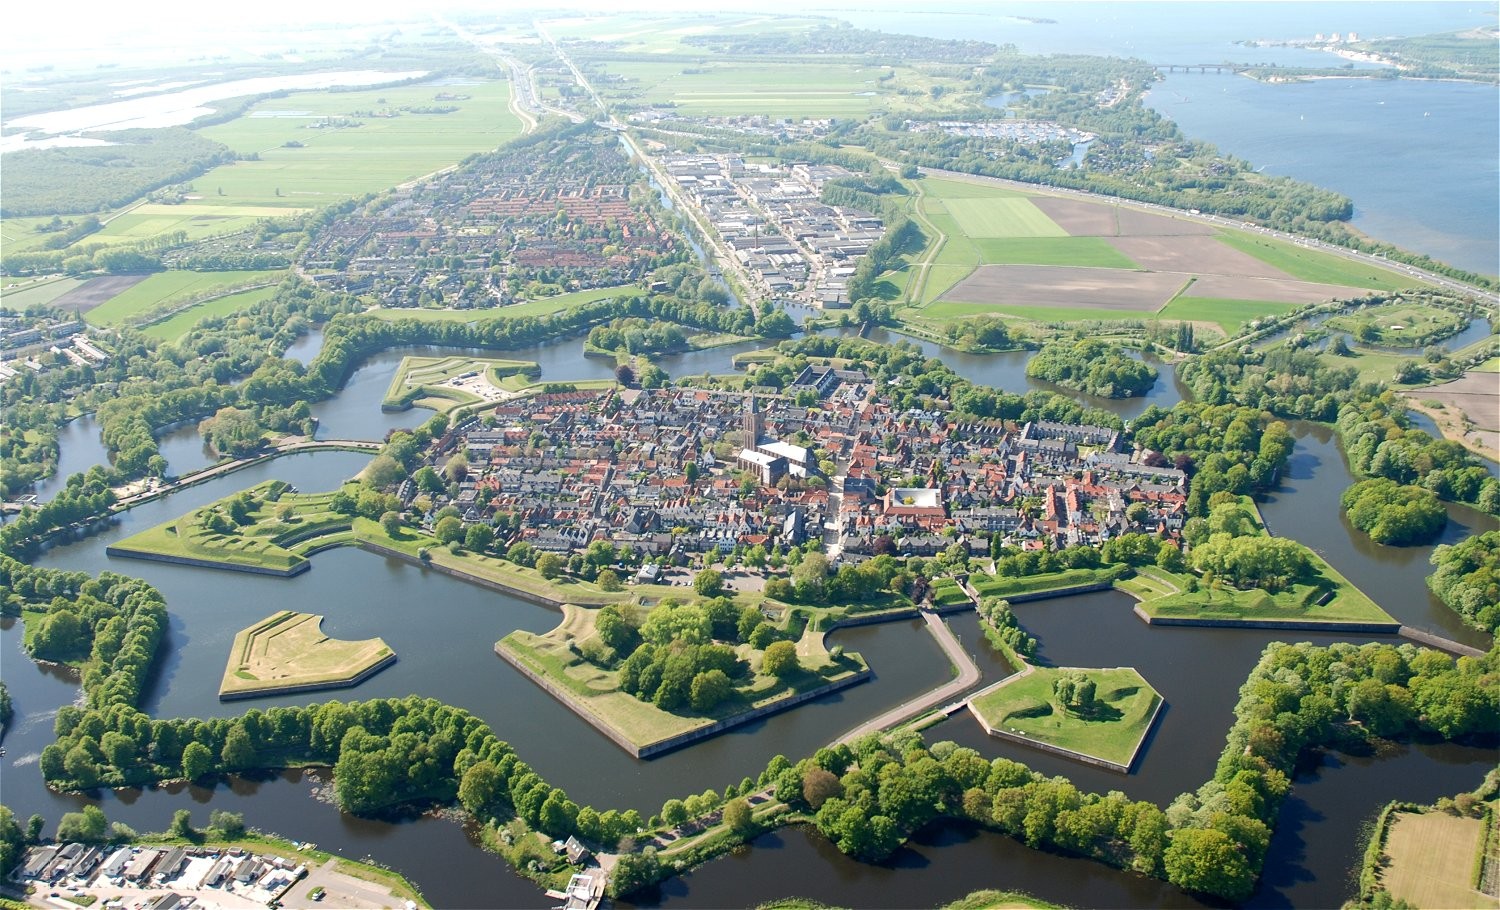 General 1500x910 aerial view Naarden (netherlands) Netherlands